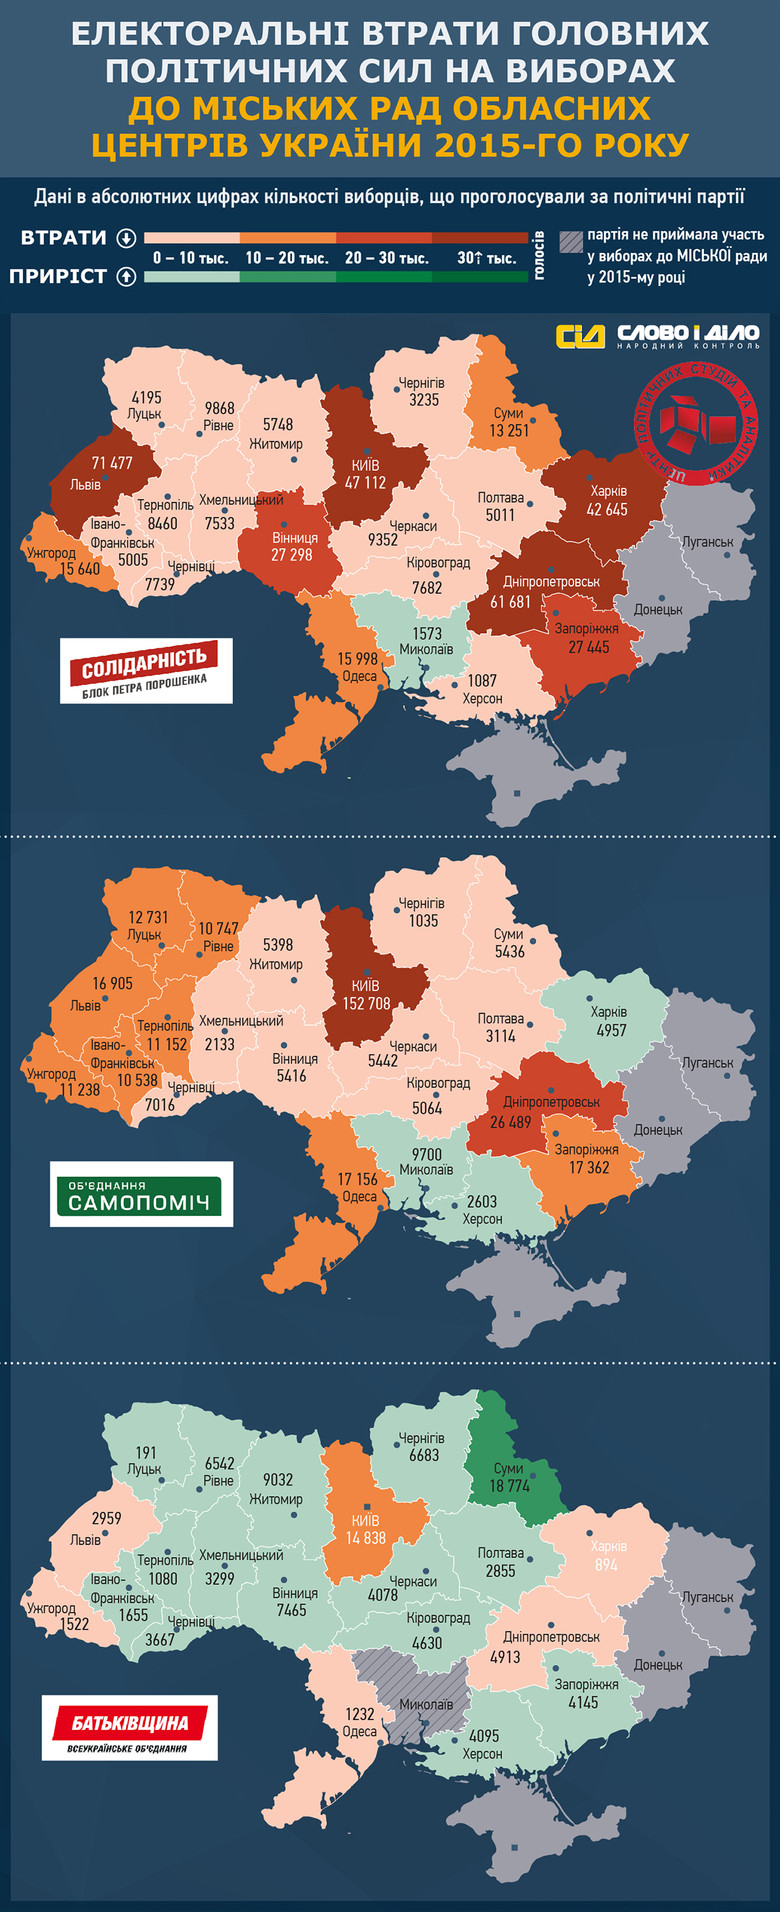 «Слово и Дело» совместно с Центром политических студий и аналитики продолжает анализировать результаты местных выборов в Украине насчет количества потерянных голосов партий в областных центрах.